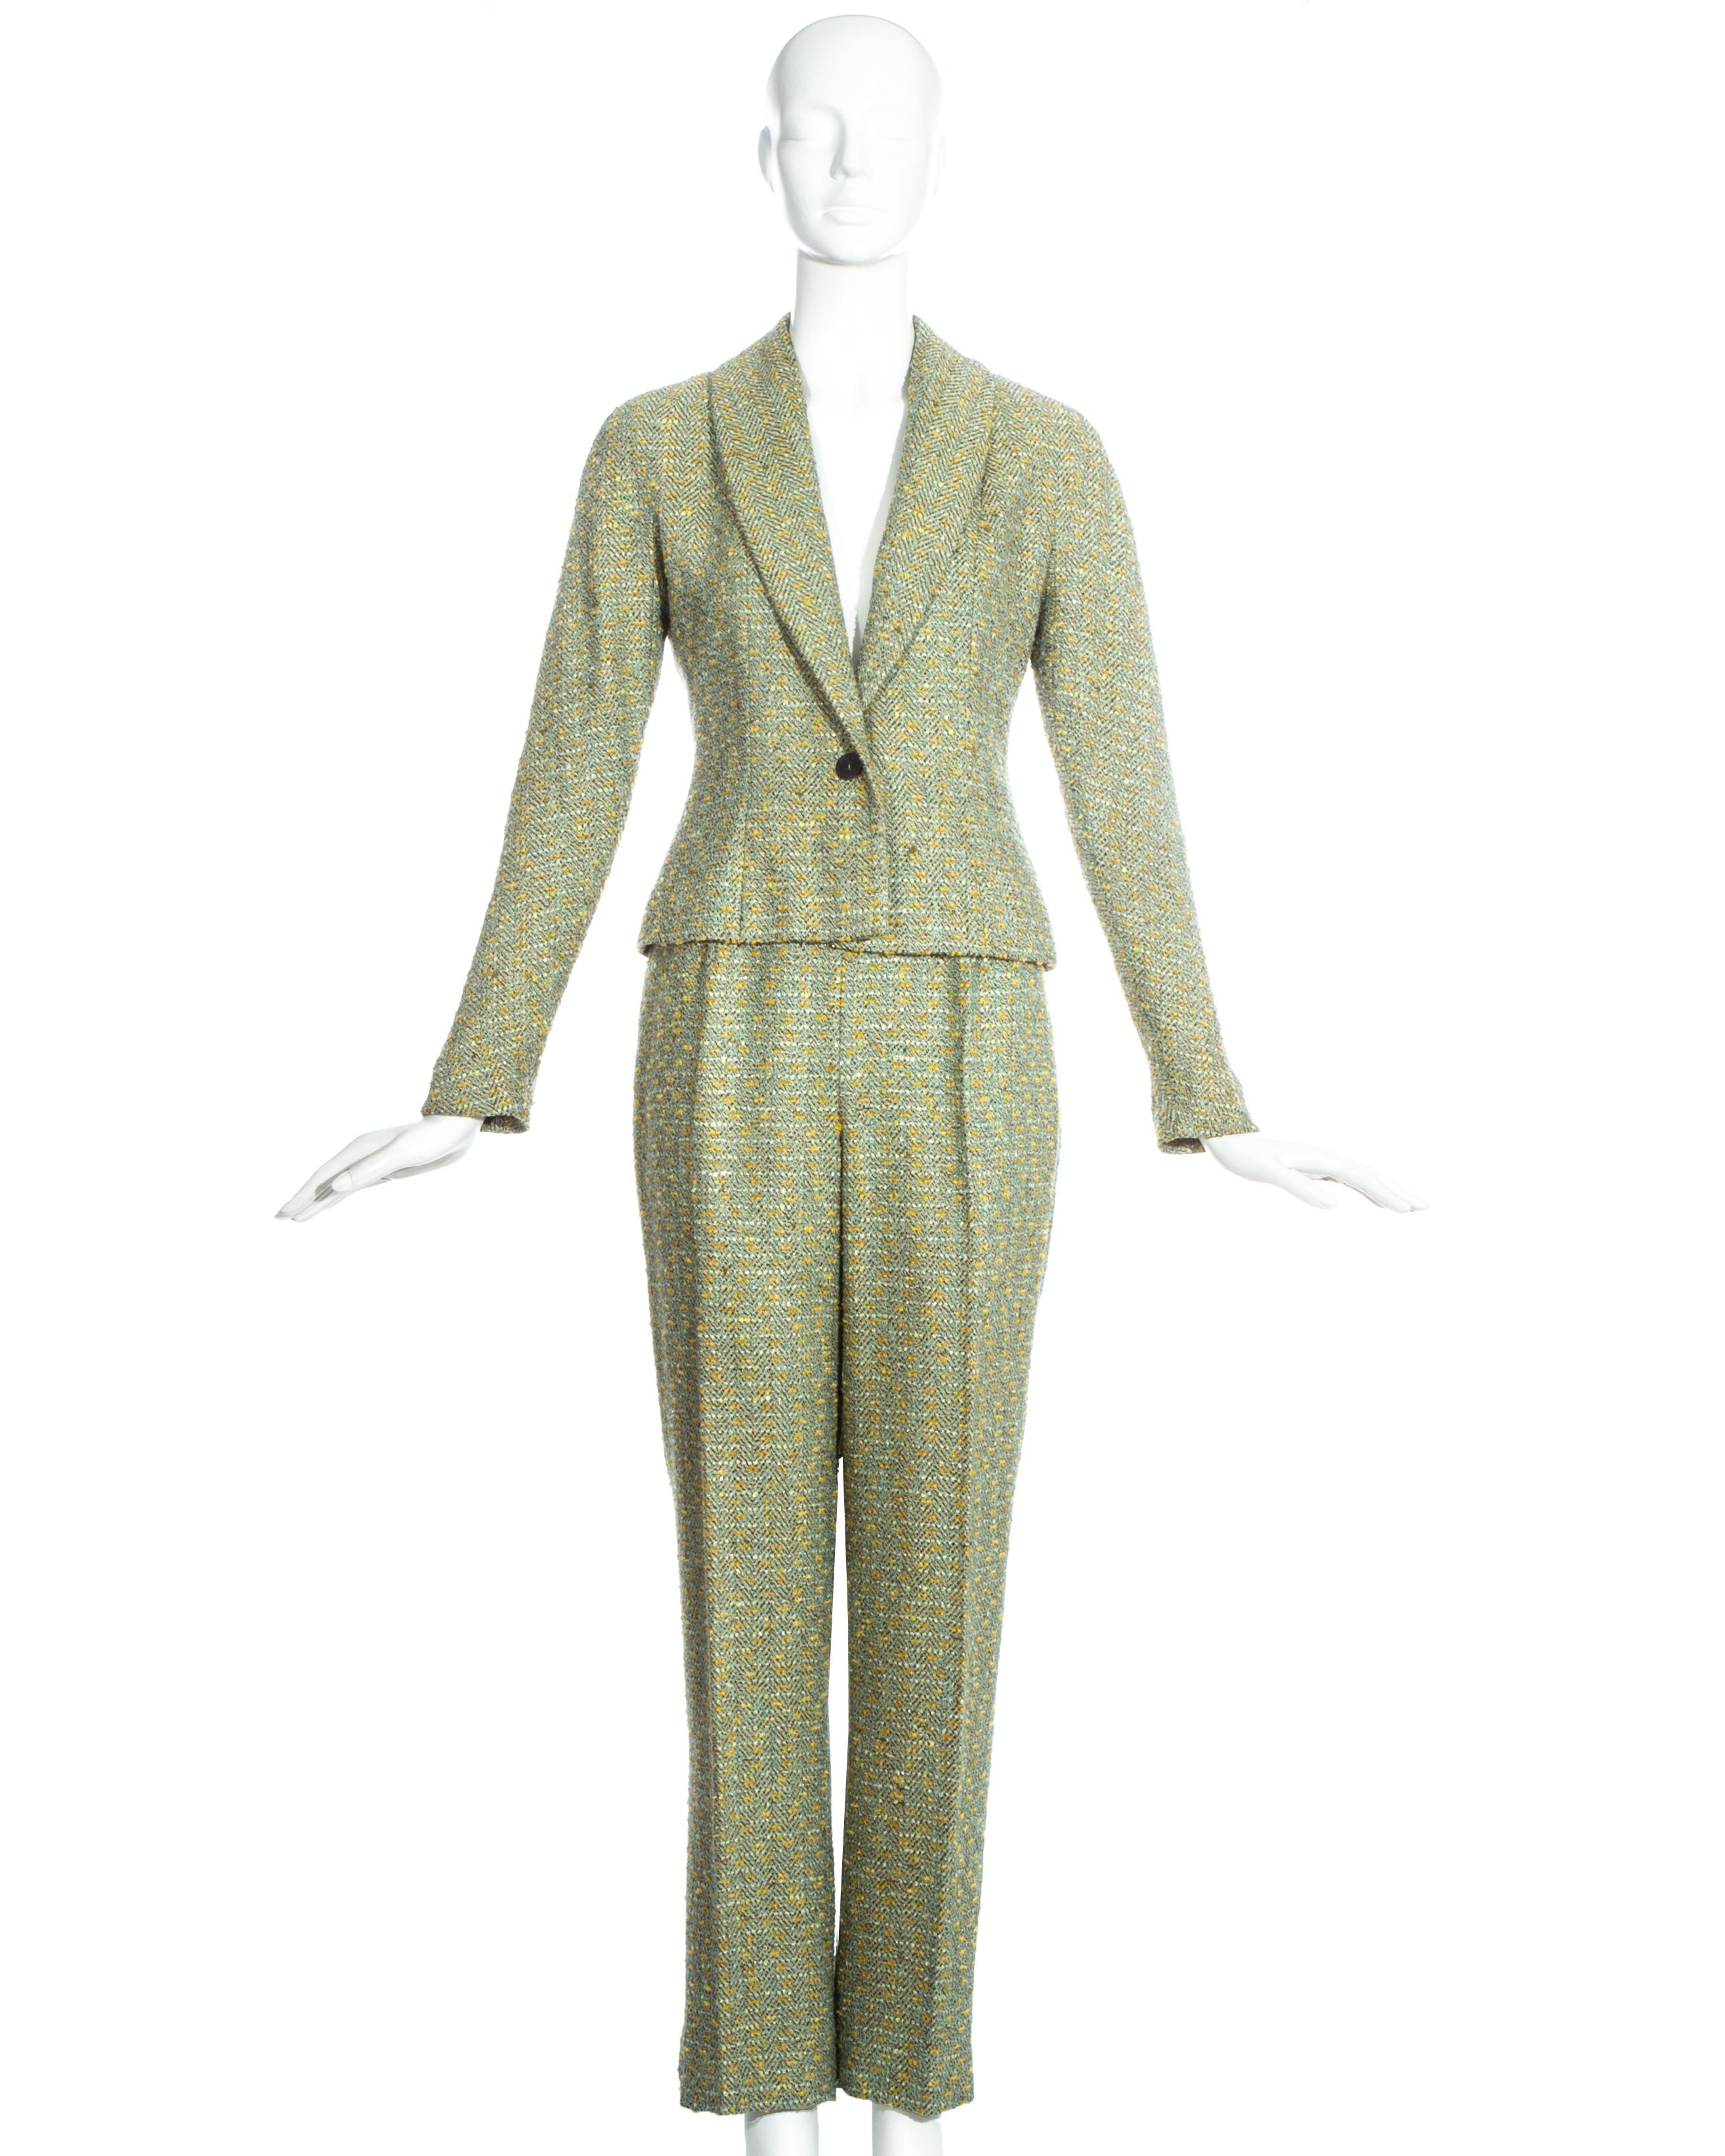 Costume 3 pièces en tweed vert Christian Dior by John Galliano comprenant : une veste blazer à revers châle, un pantalon droit et une jupe crayon longueur genou.

Automne-Hiver 1998